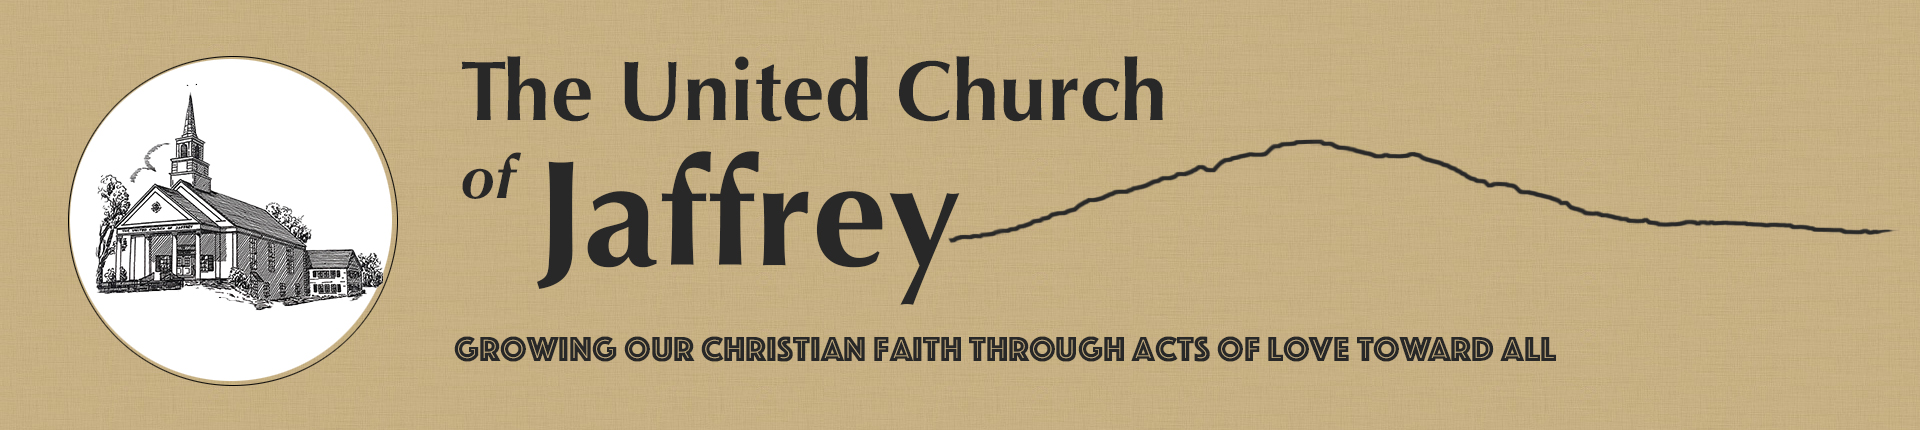 The United Church of Jaffrey